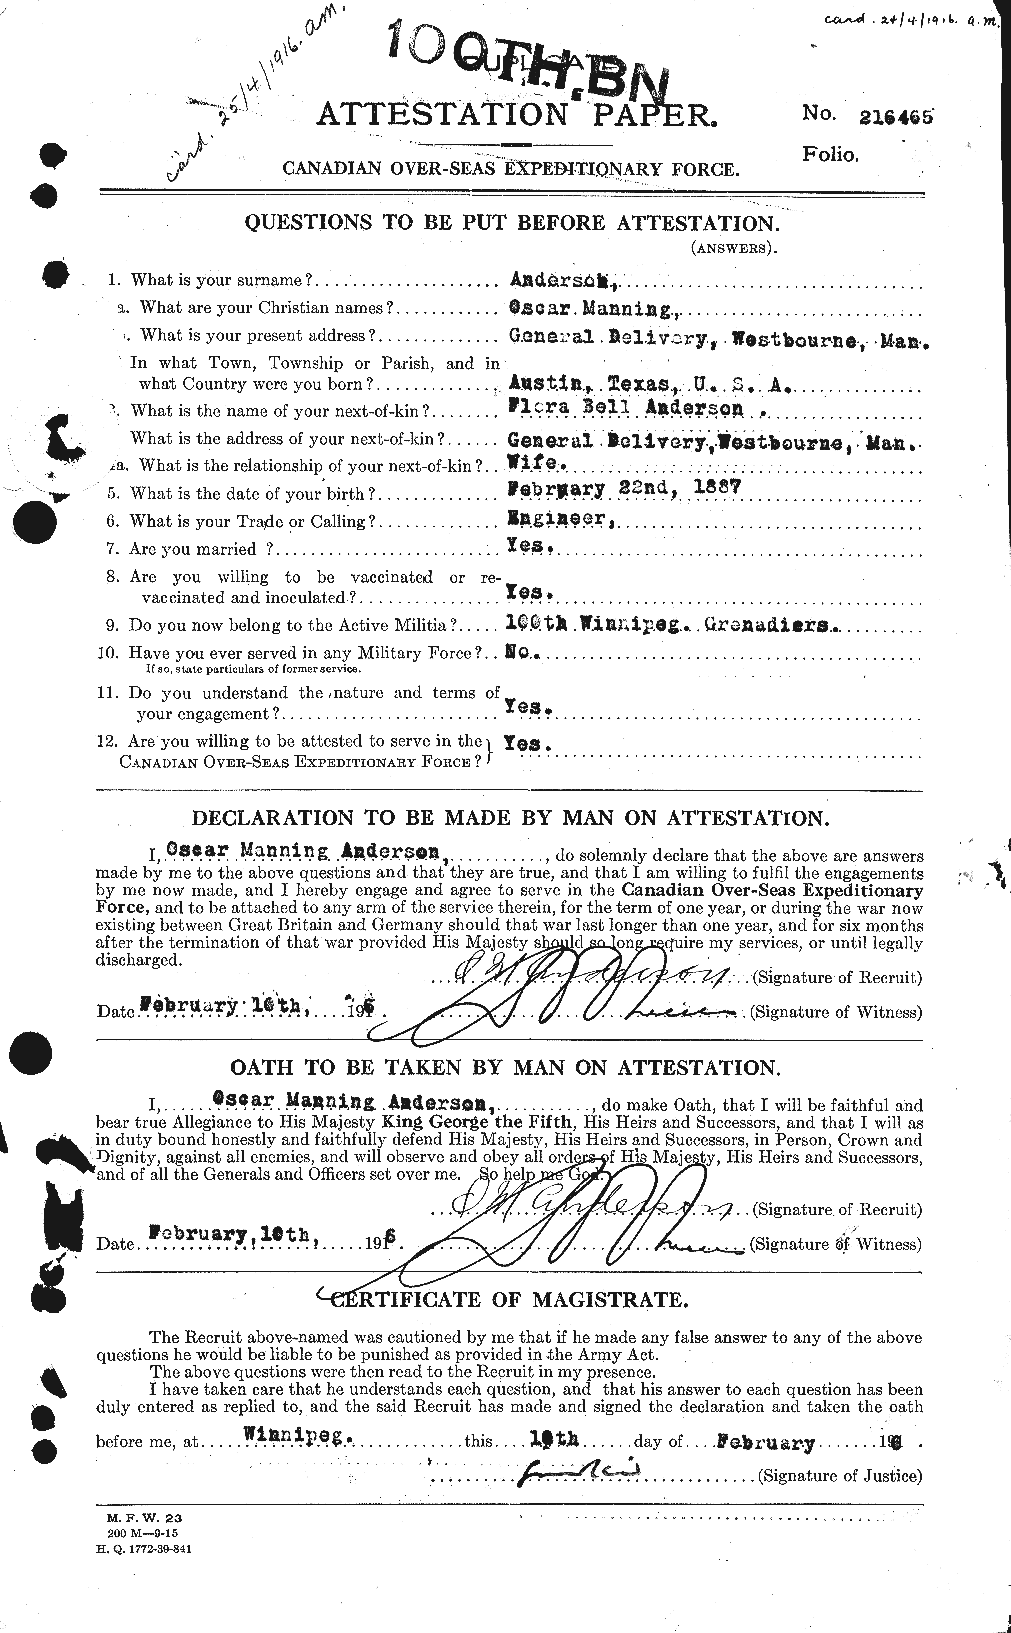 Dossiers du Personnel de la Première Guerre mondiale - CEC 207376a